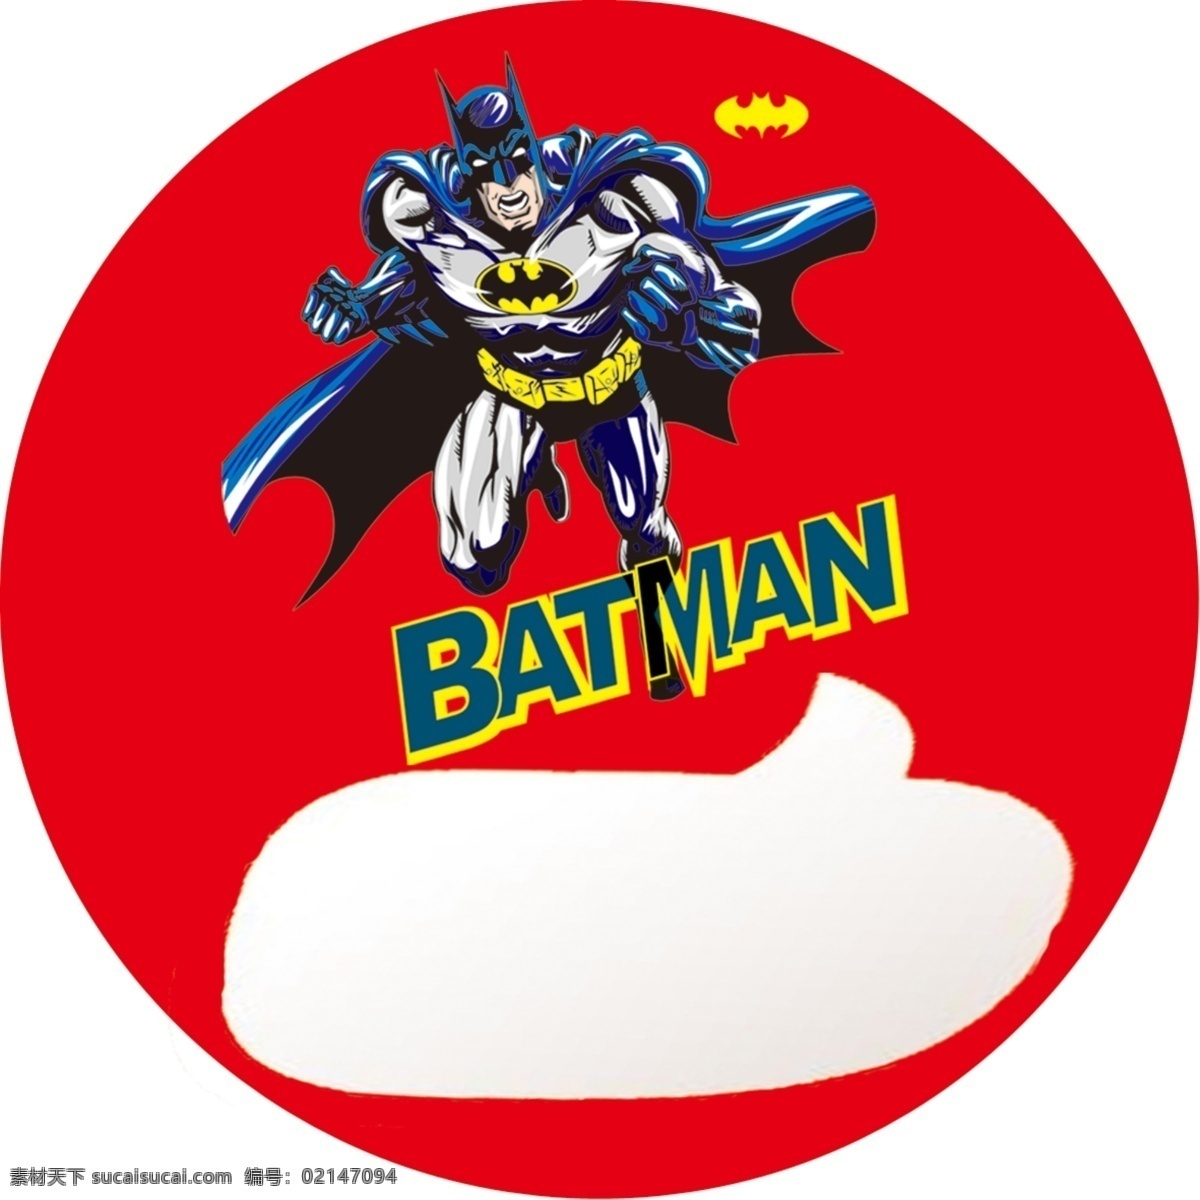 蝙蝠侠 batman 蒙面 漫画英雄 圆